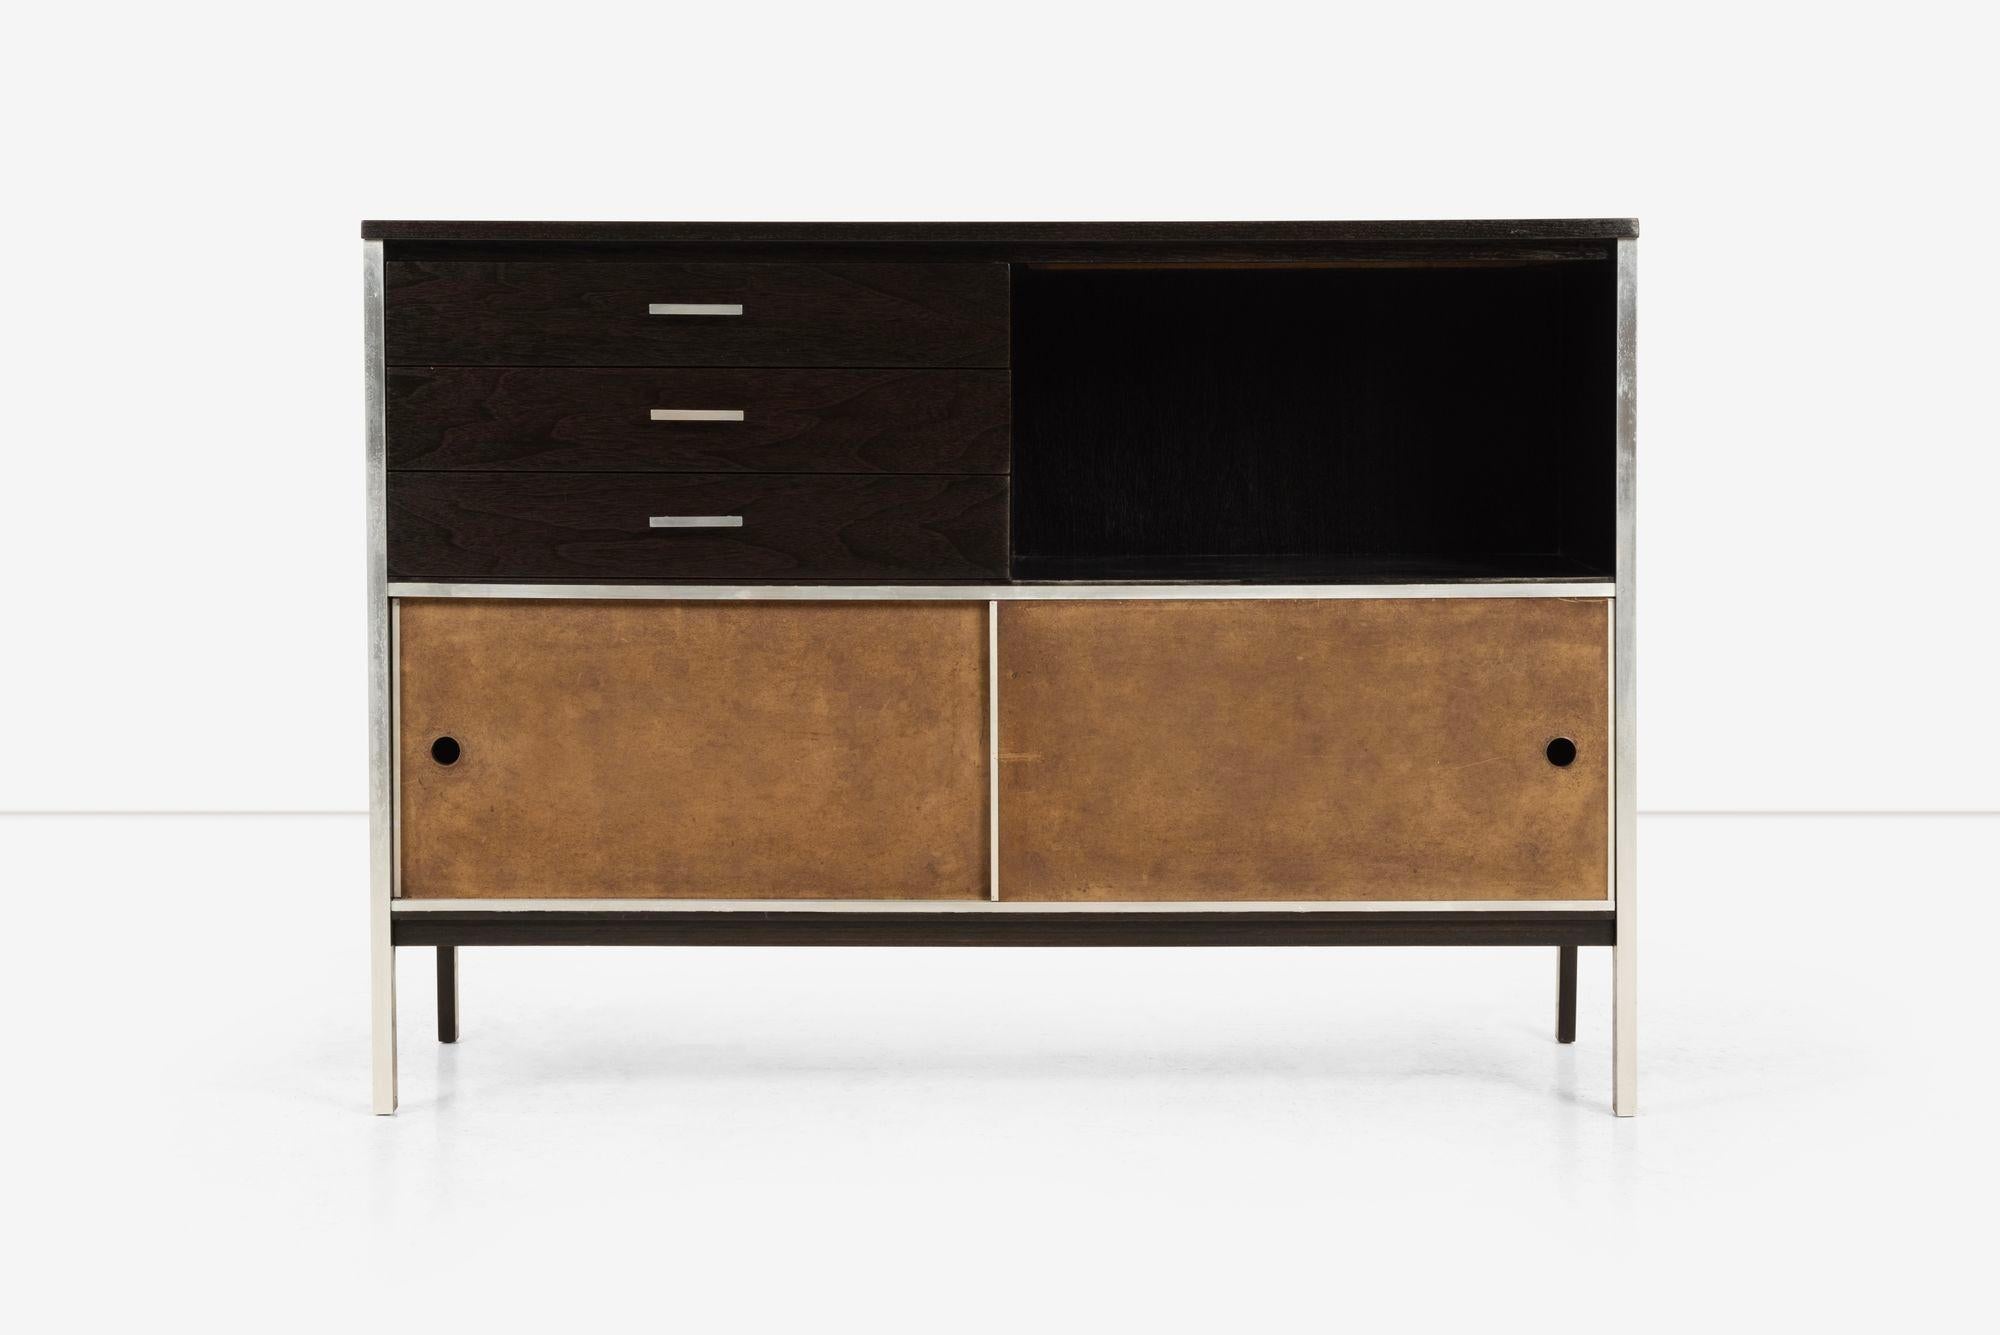 Le meuble de rangement de Paul McCobb pour Calvin Furniture présente une finition noircie mate personnalisée sur du noyer.
Trois tiroirs, un présentoir ouvert et des portes coulissantes pour un rangement supplémentaire. Refini avec une finition